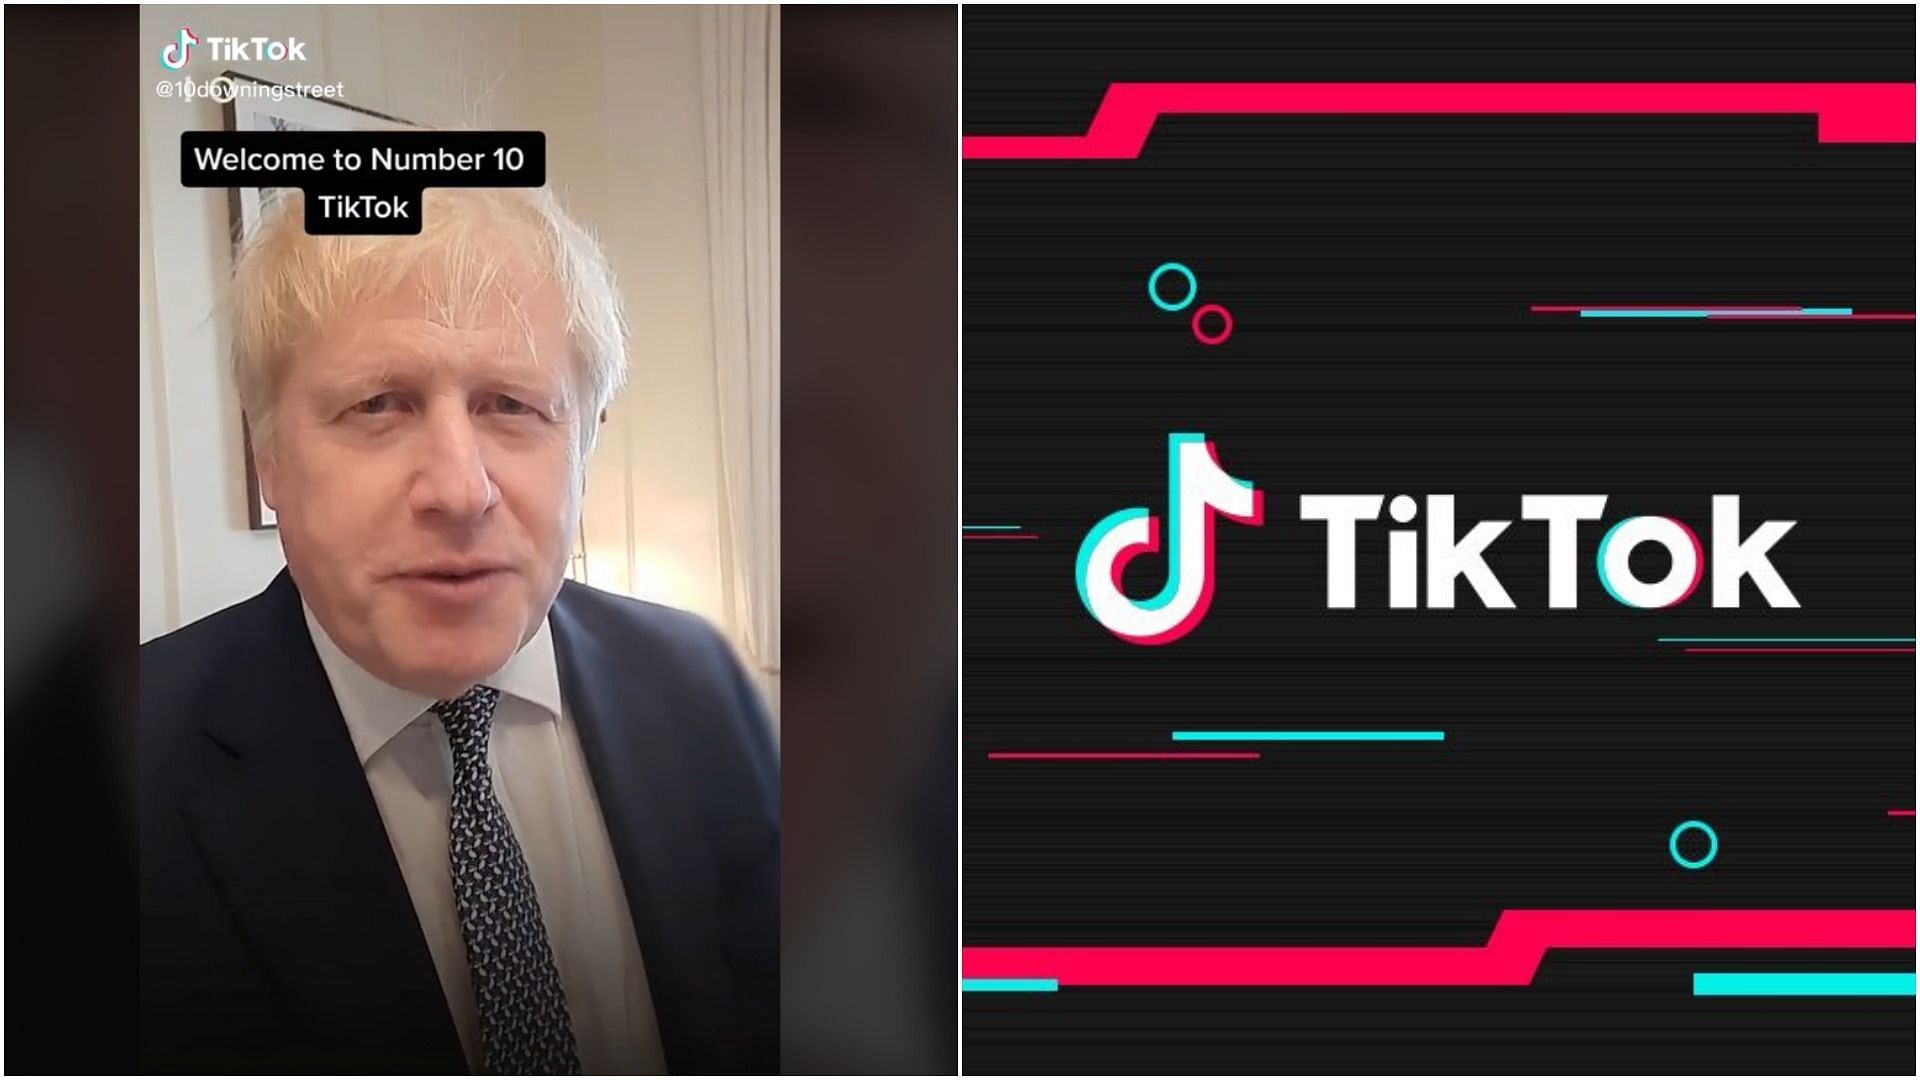 British PM Boris Johnson is now on TikTok (Image via @10downigstreet/TikTok and @tiktok/Facebook)